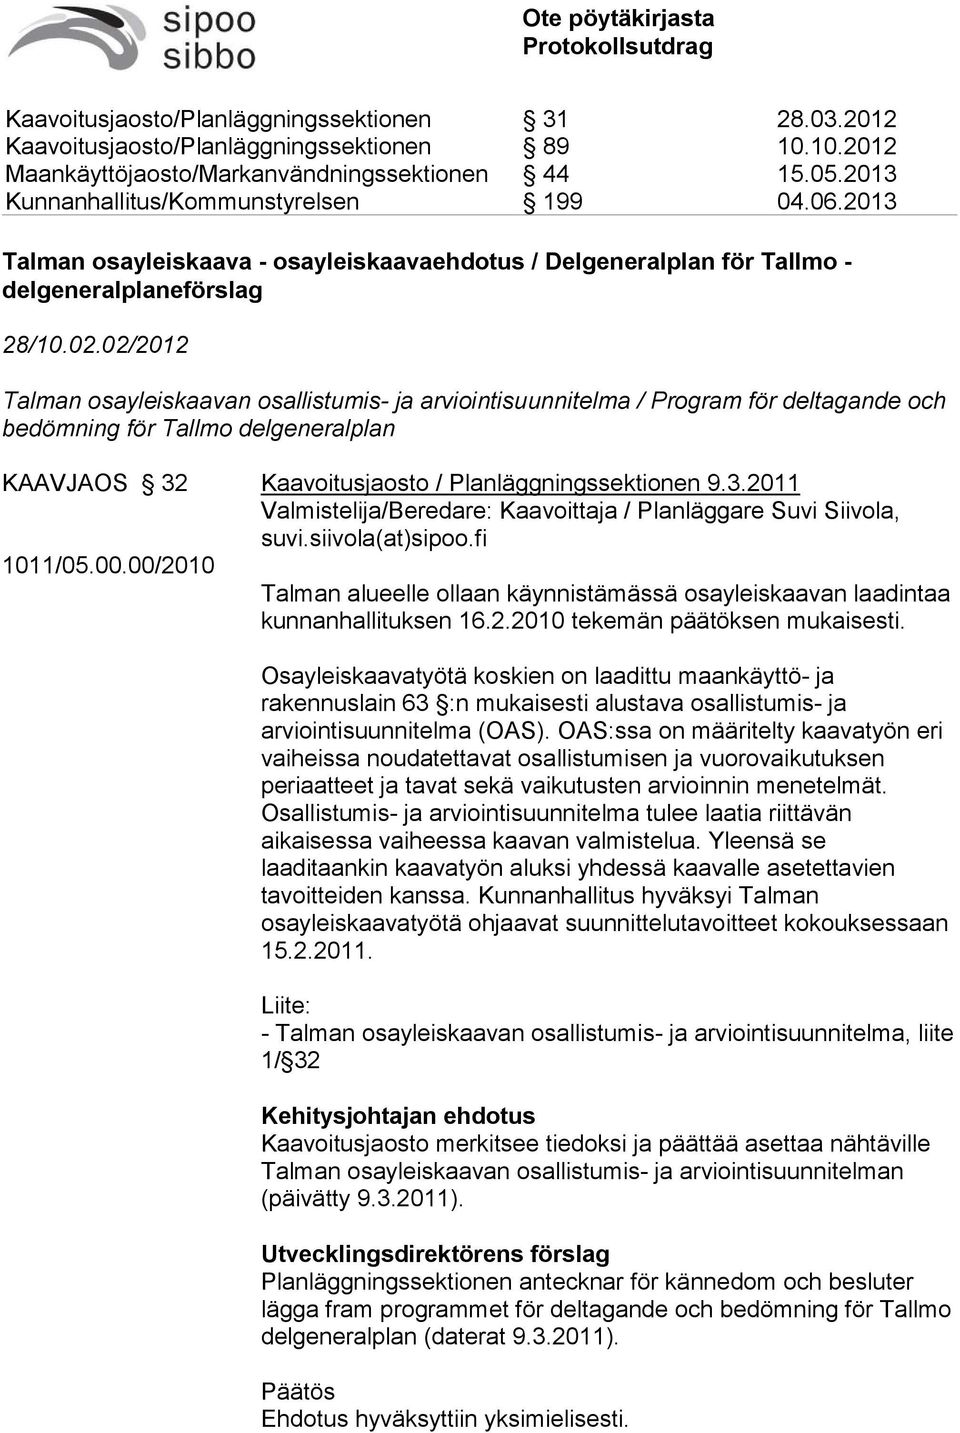 Kaavoitusjaosto / Planläggningssektionen 9.3.2011 Valmistelija/Beredare: Kaavoittaja / Planläggare Suvi Siivola, suvi.siivola(at)sipoo.fi 1011/05.00.